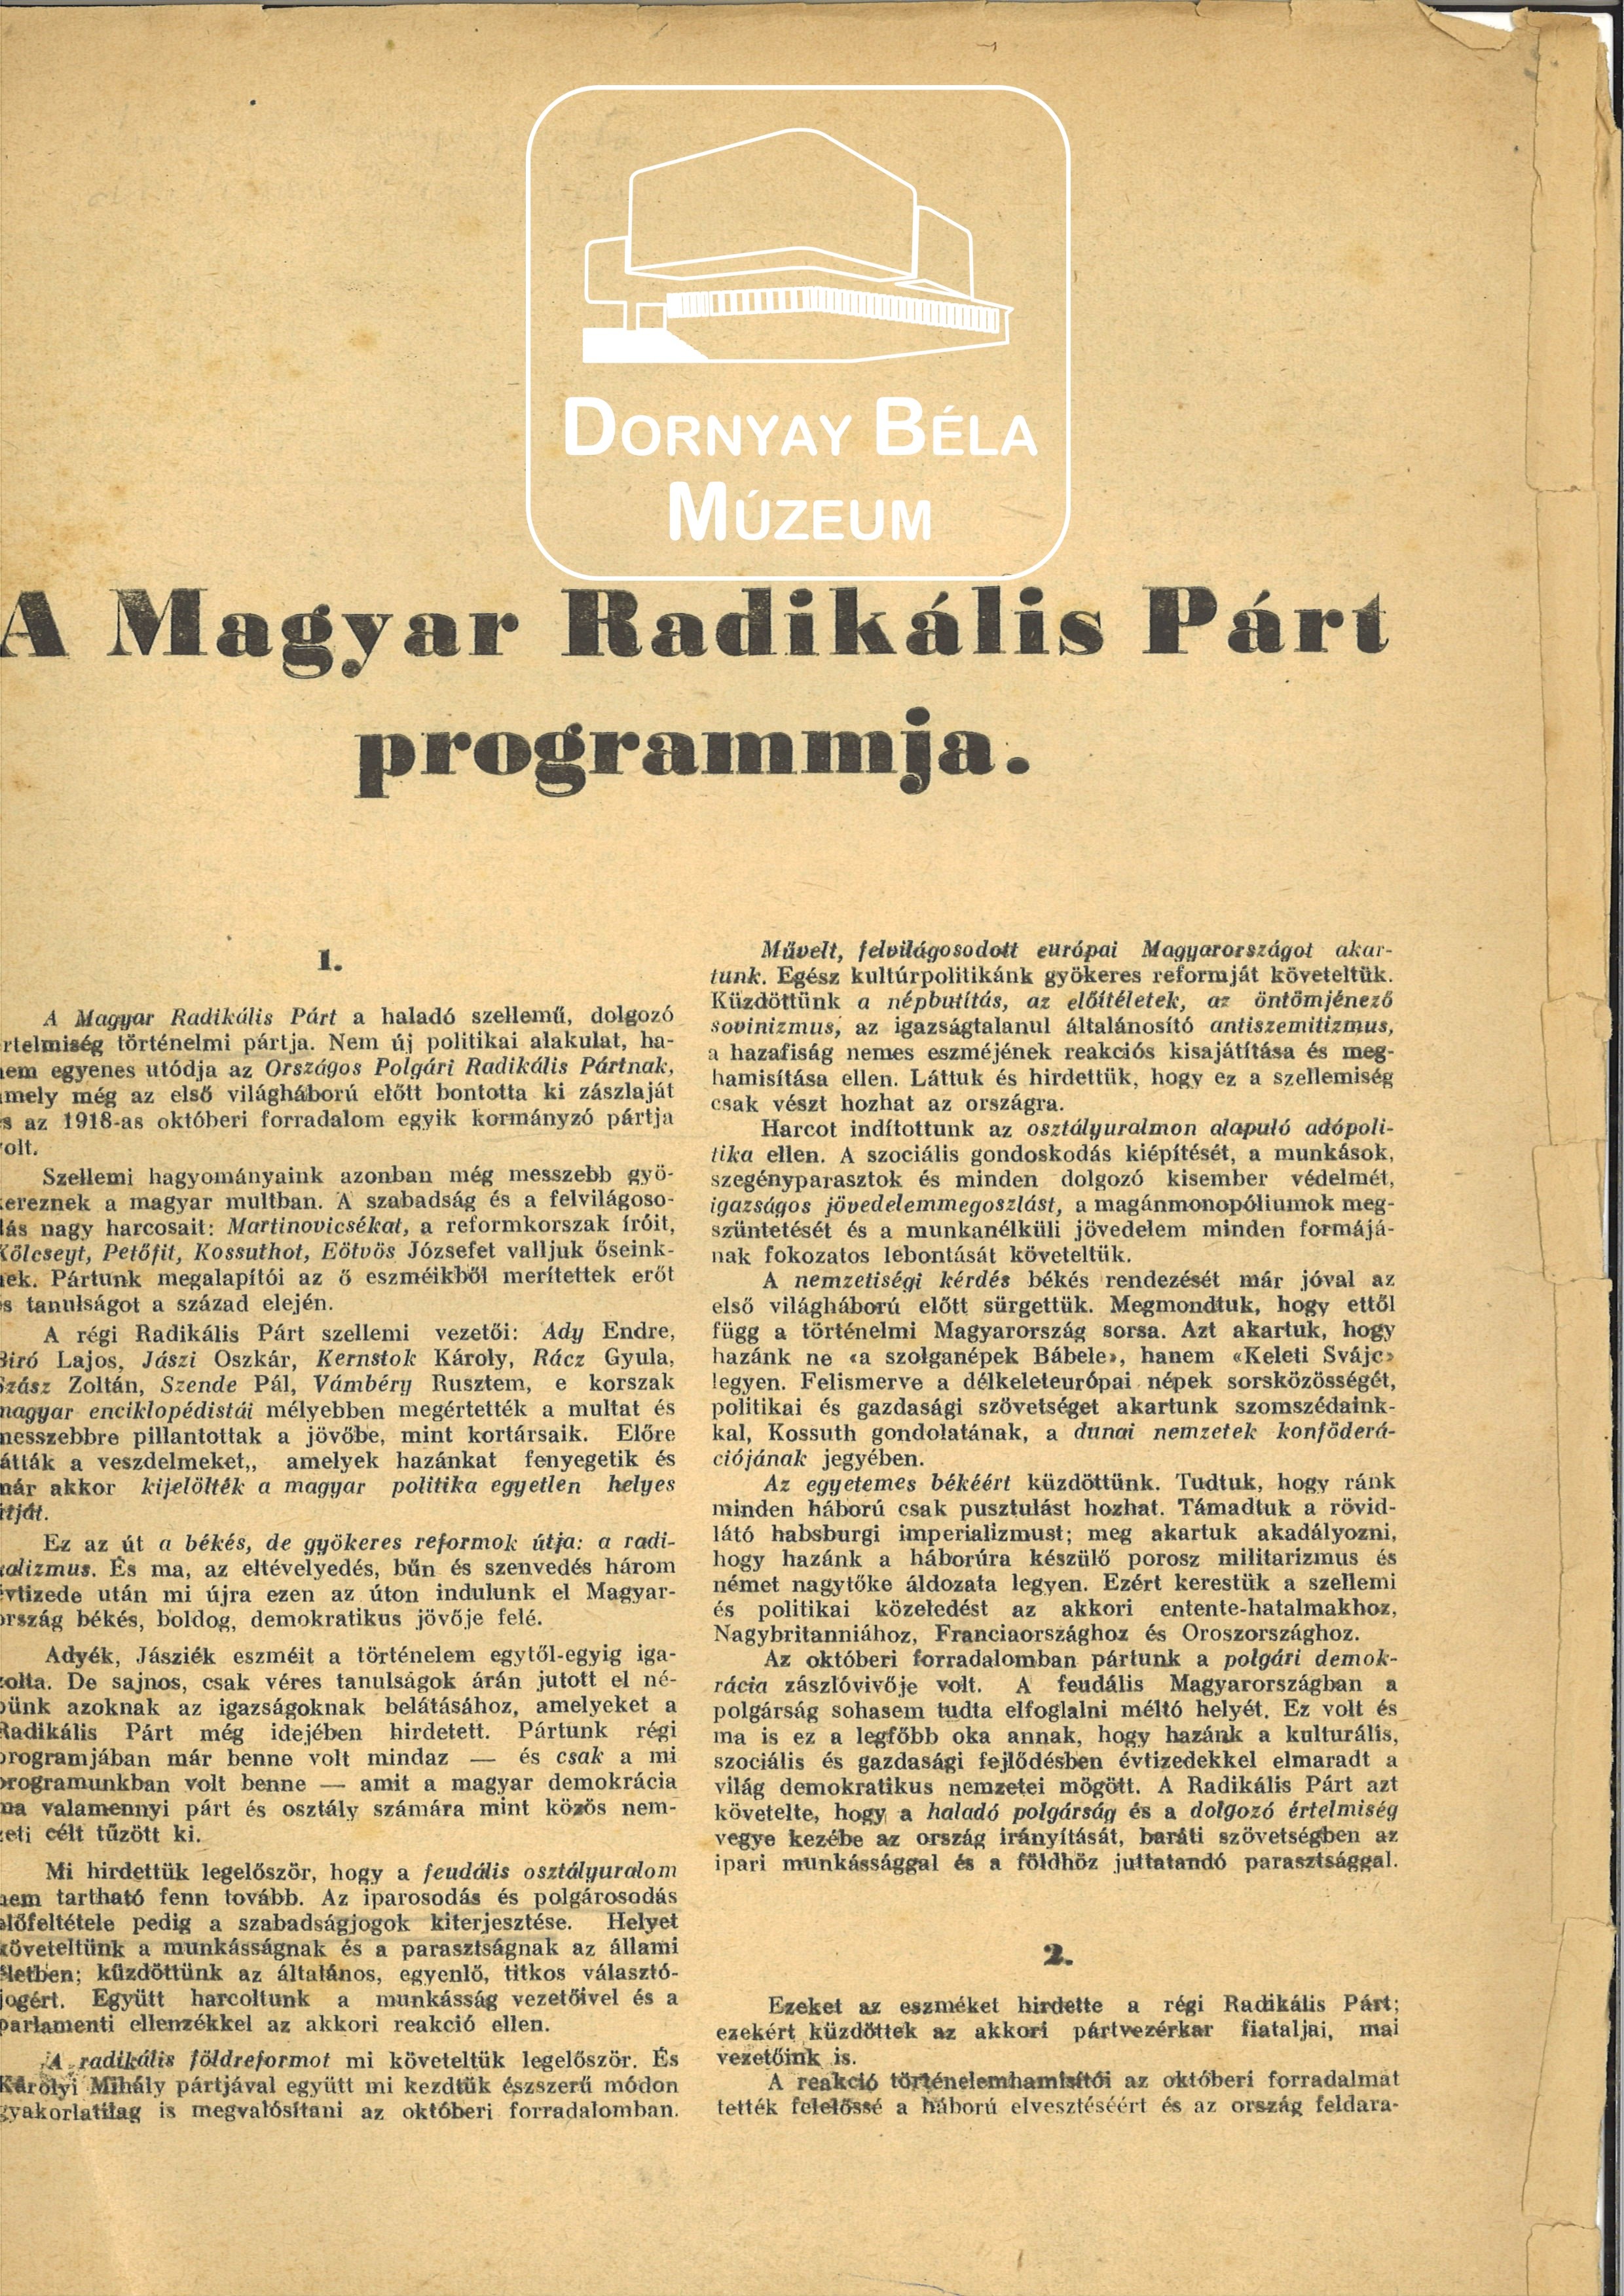 A Magyar Radikális Párt programja. (Dornyay Béla Múzeum, Salgótarján CC BY-NC-SA)